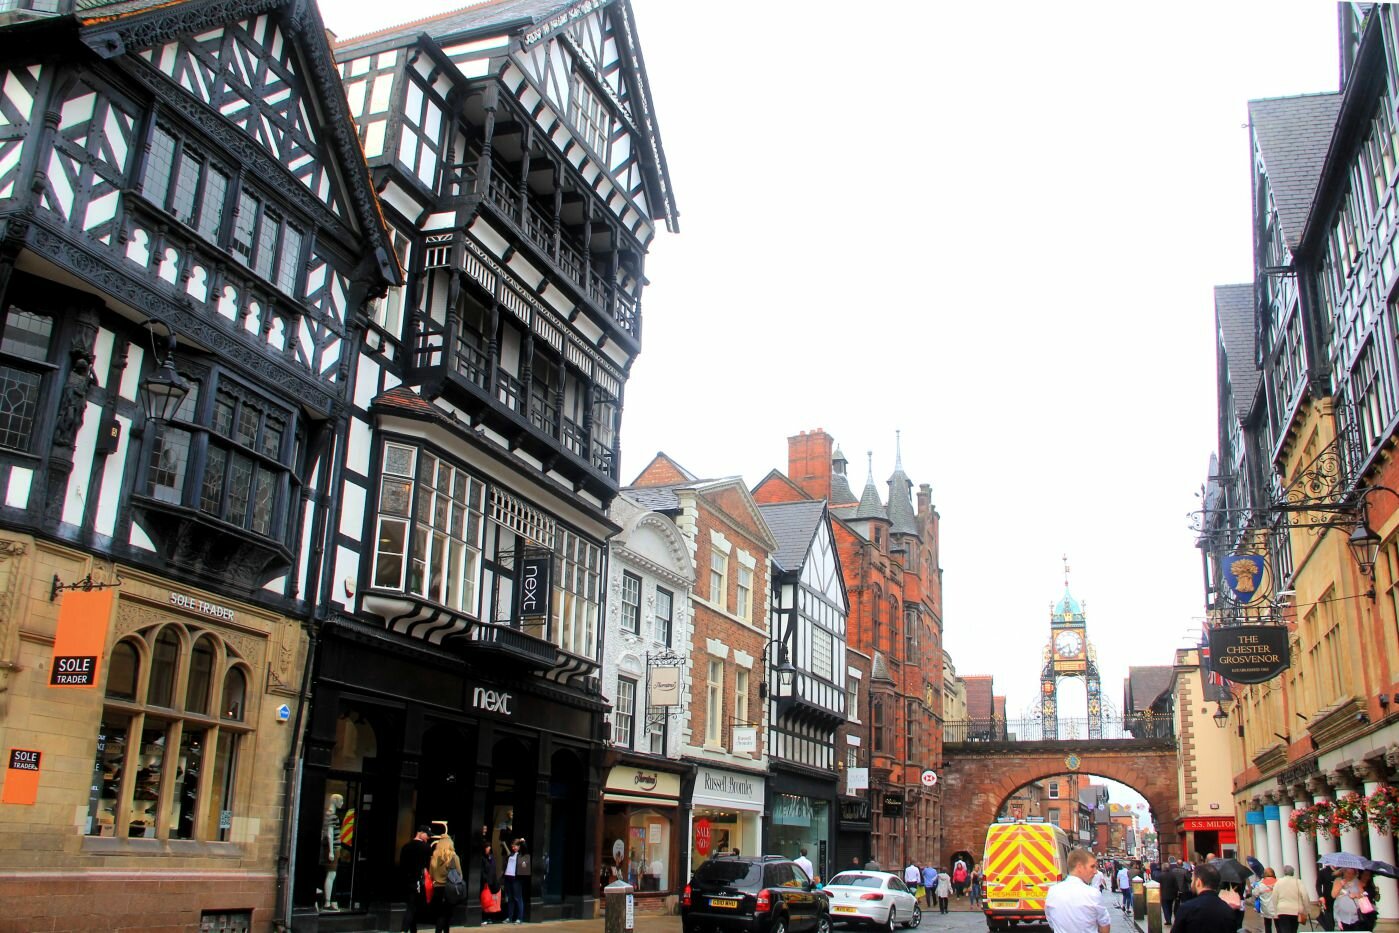 Nel cuore della vecchia Inghilterra - Chester - Case a graticcio del centro storico